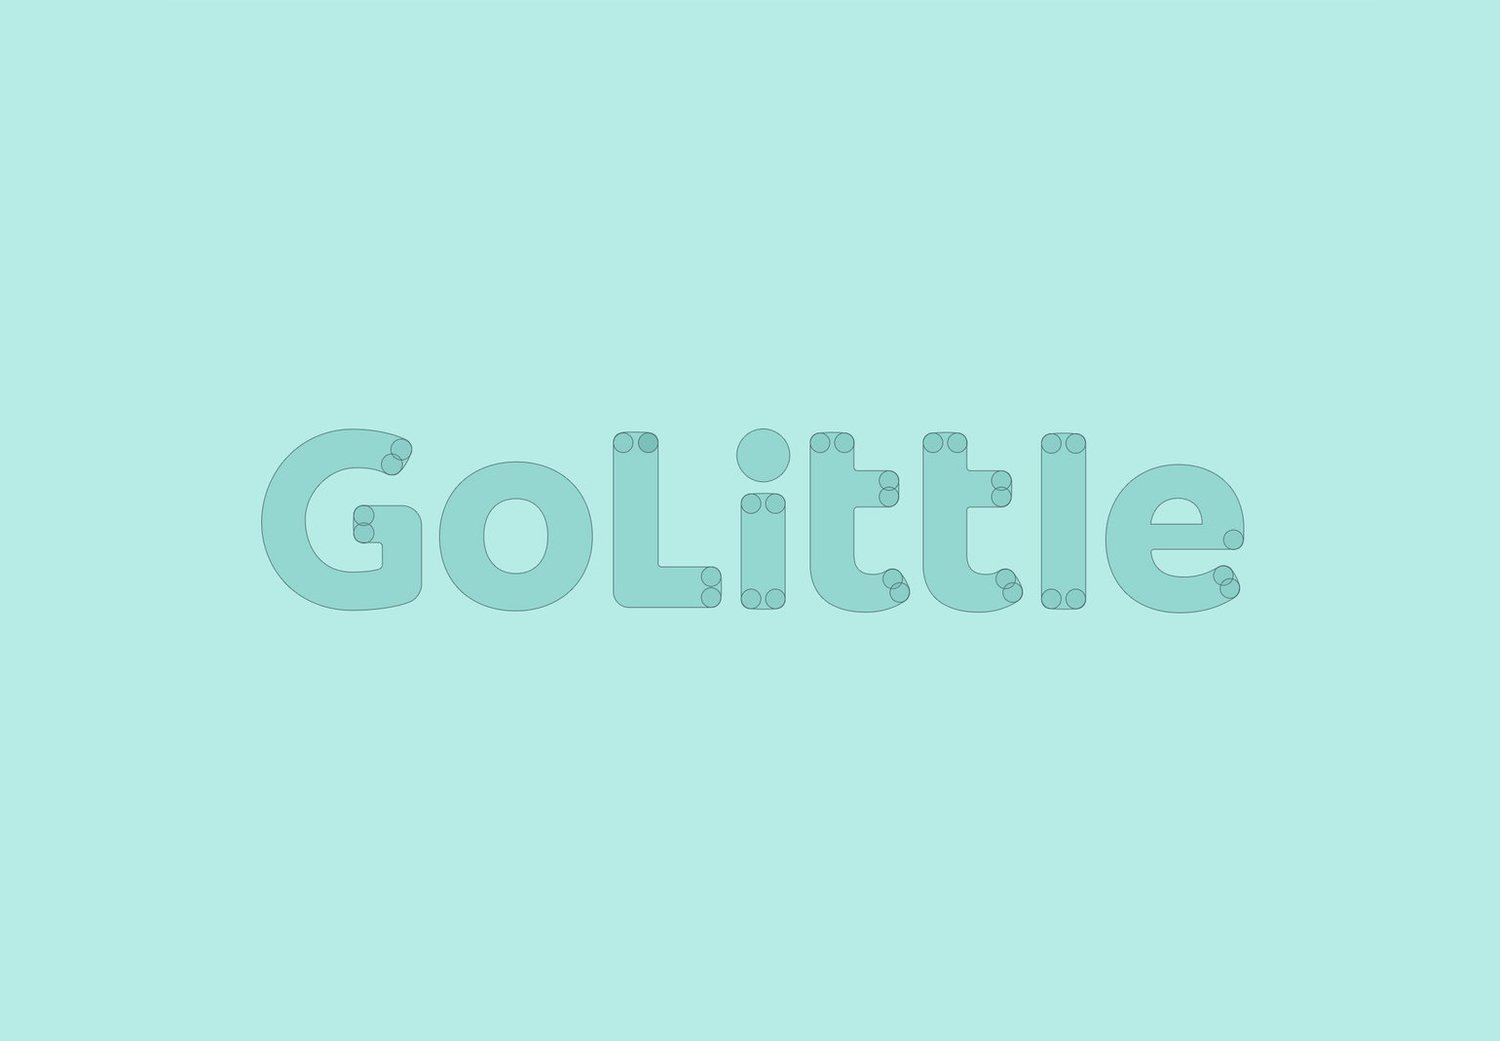 golittle-case